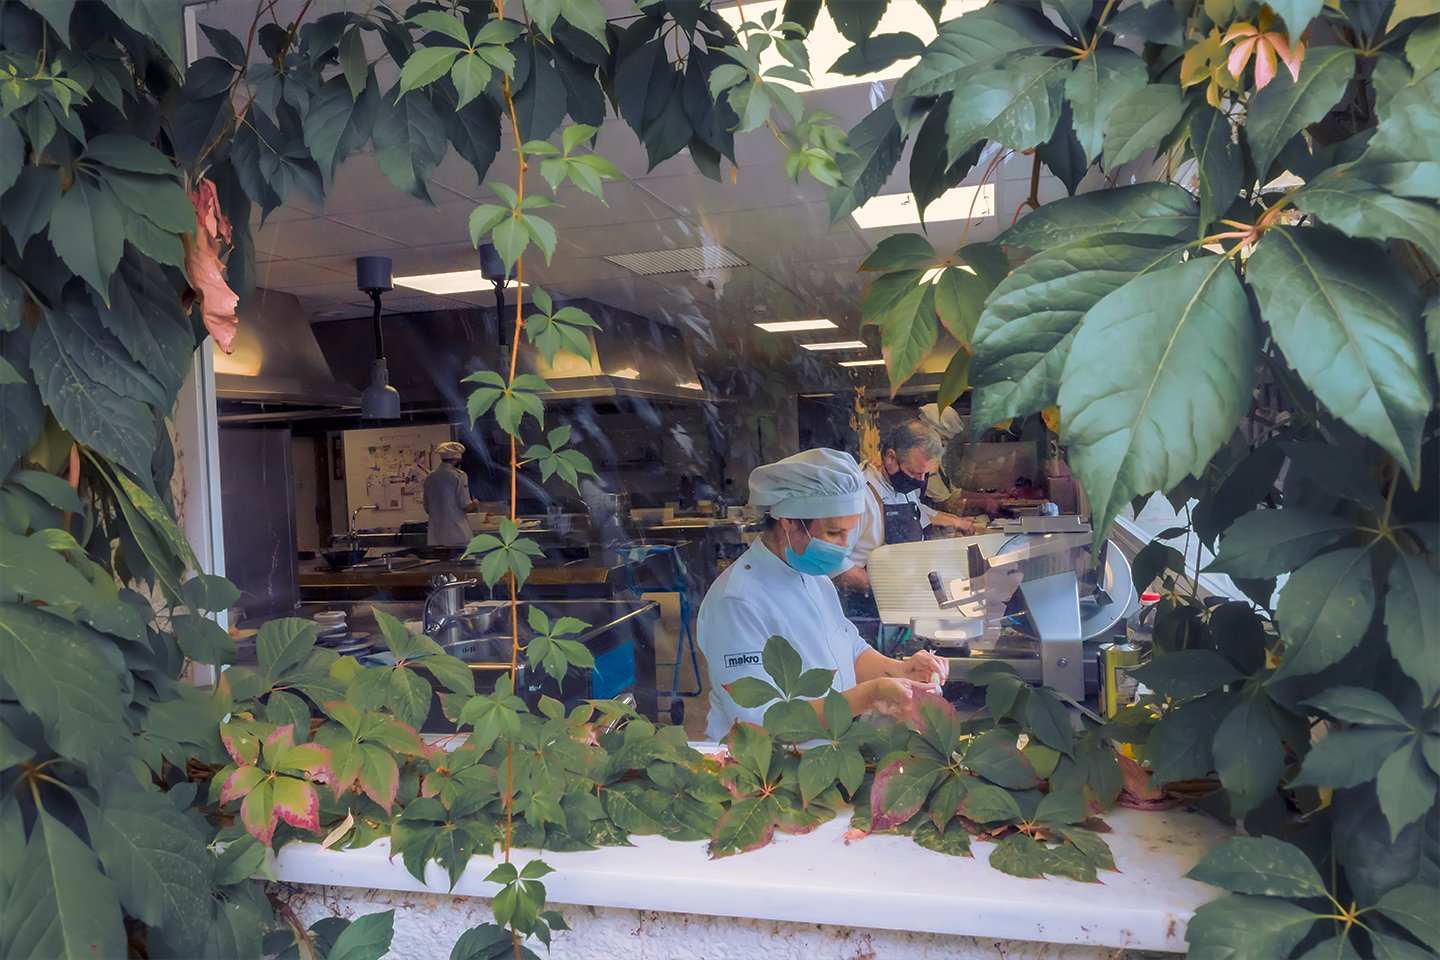 Imagen de un cocinero trabajando detrás de un jardín vertical.